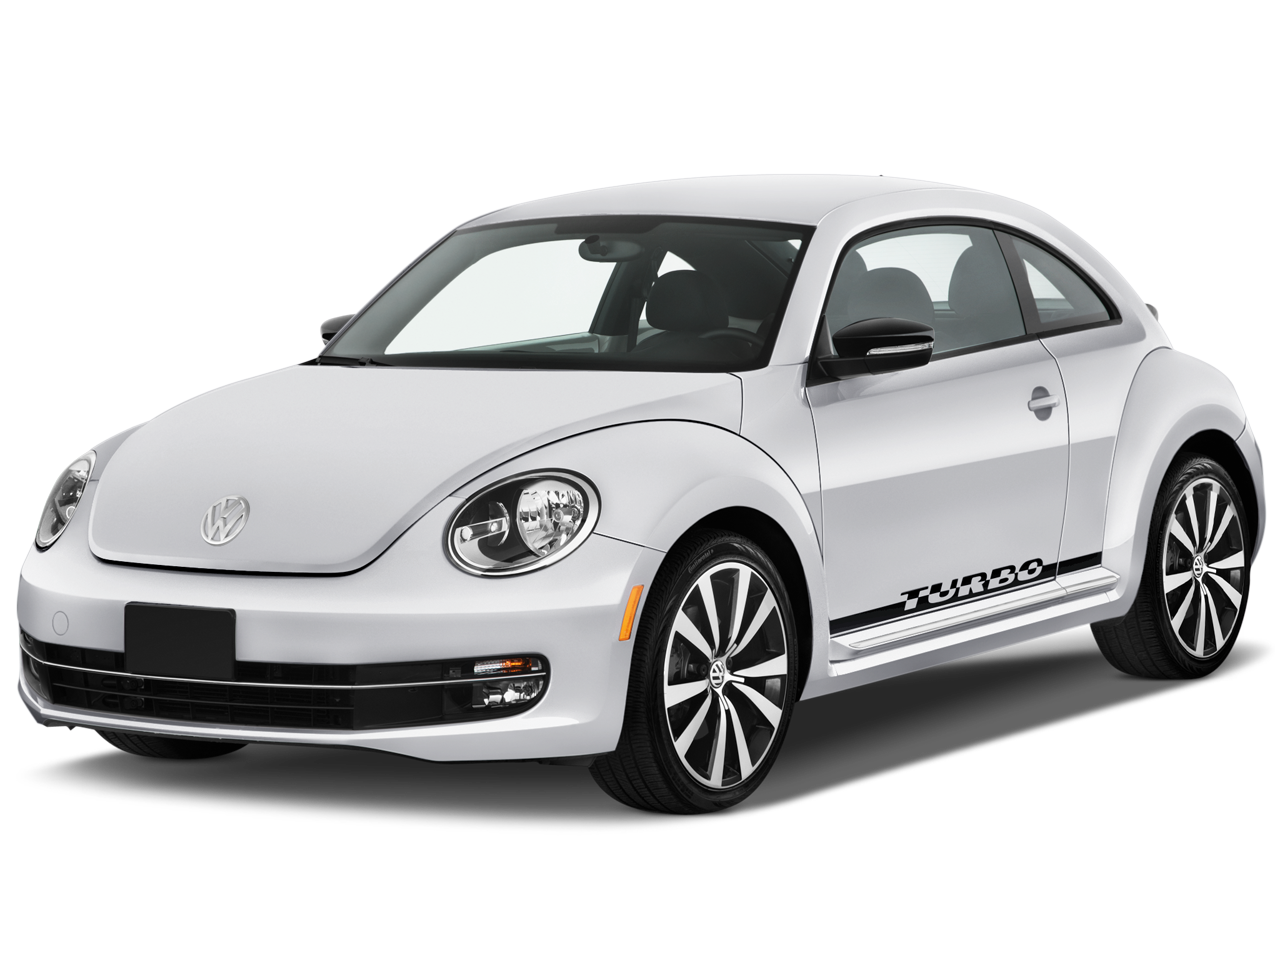 Kumbang Volkswagen Putih